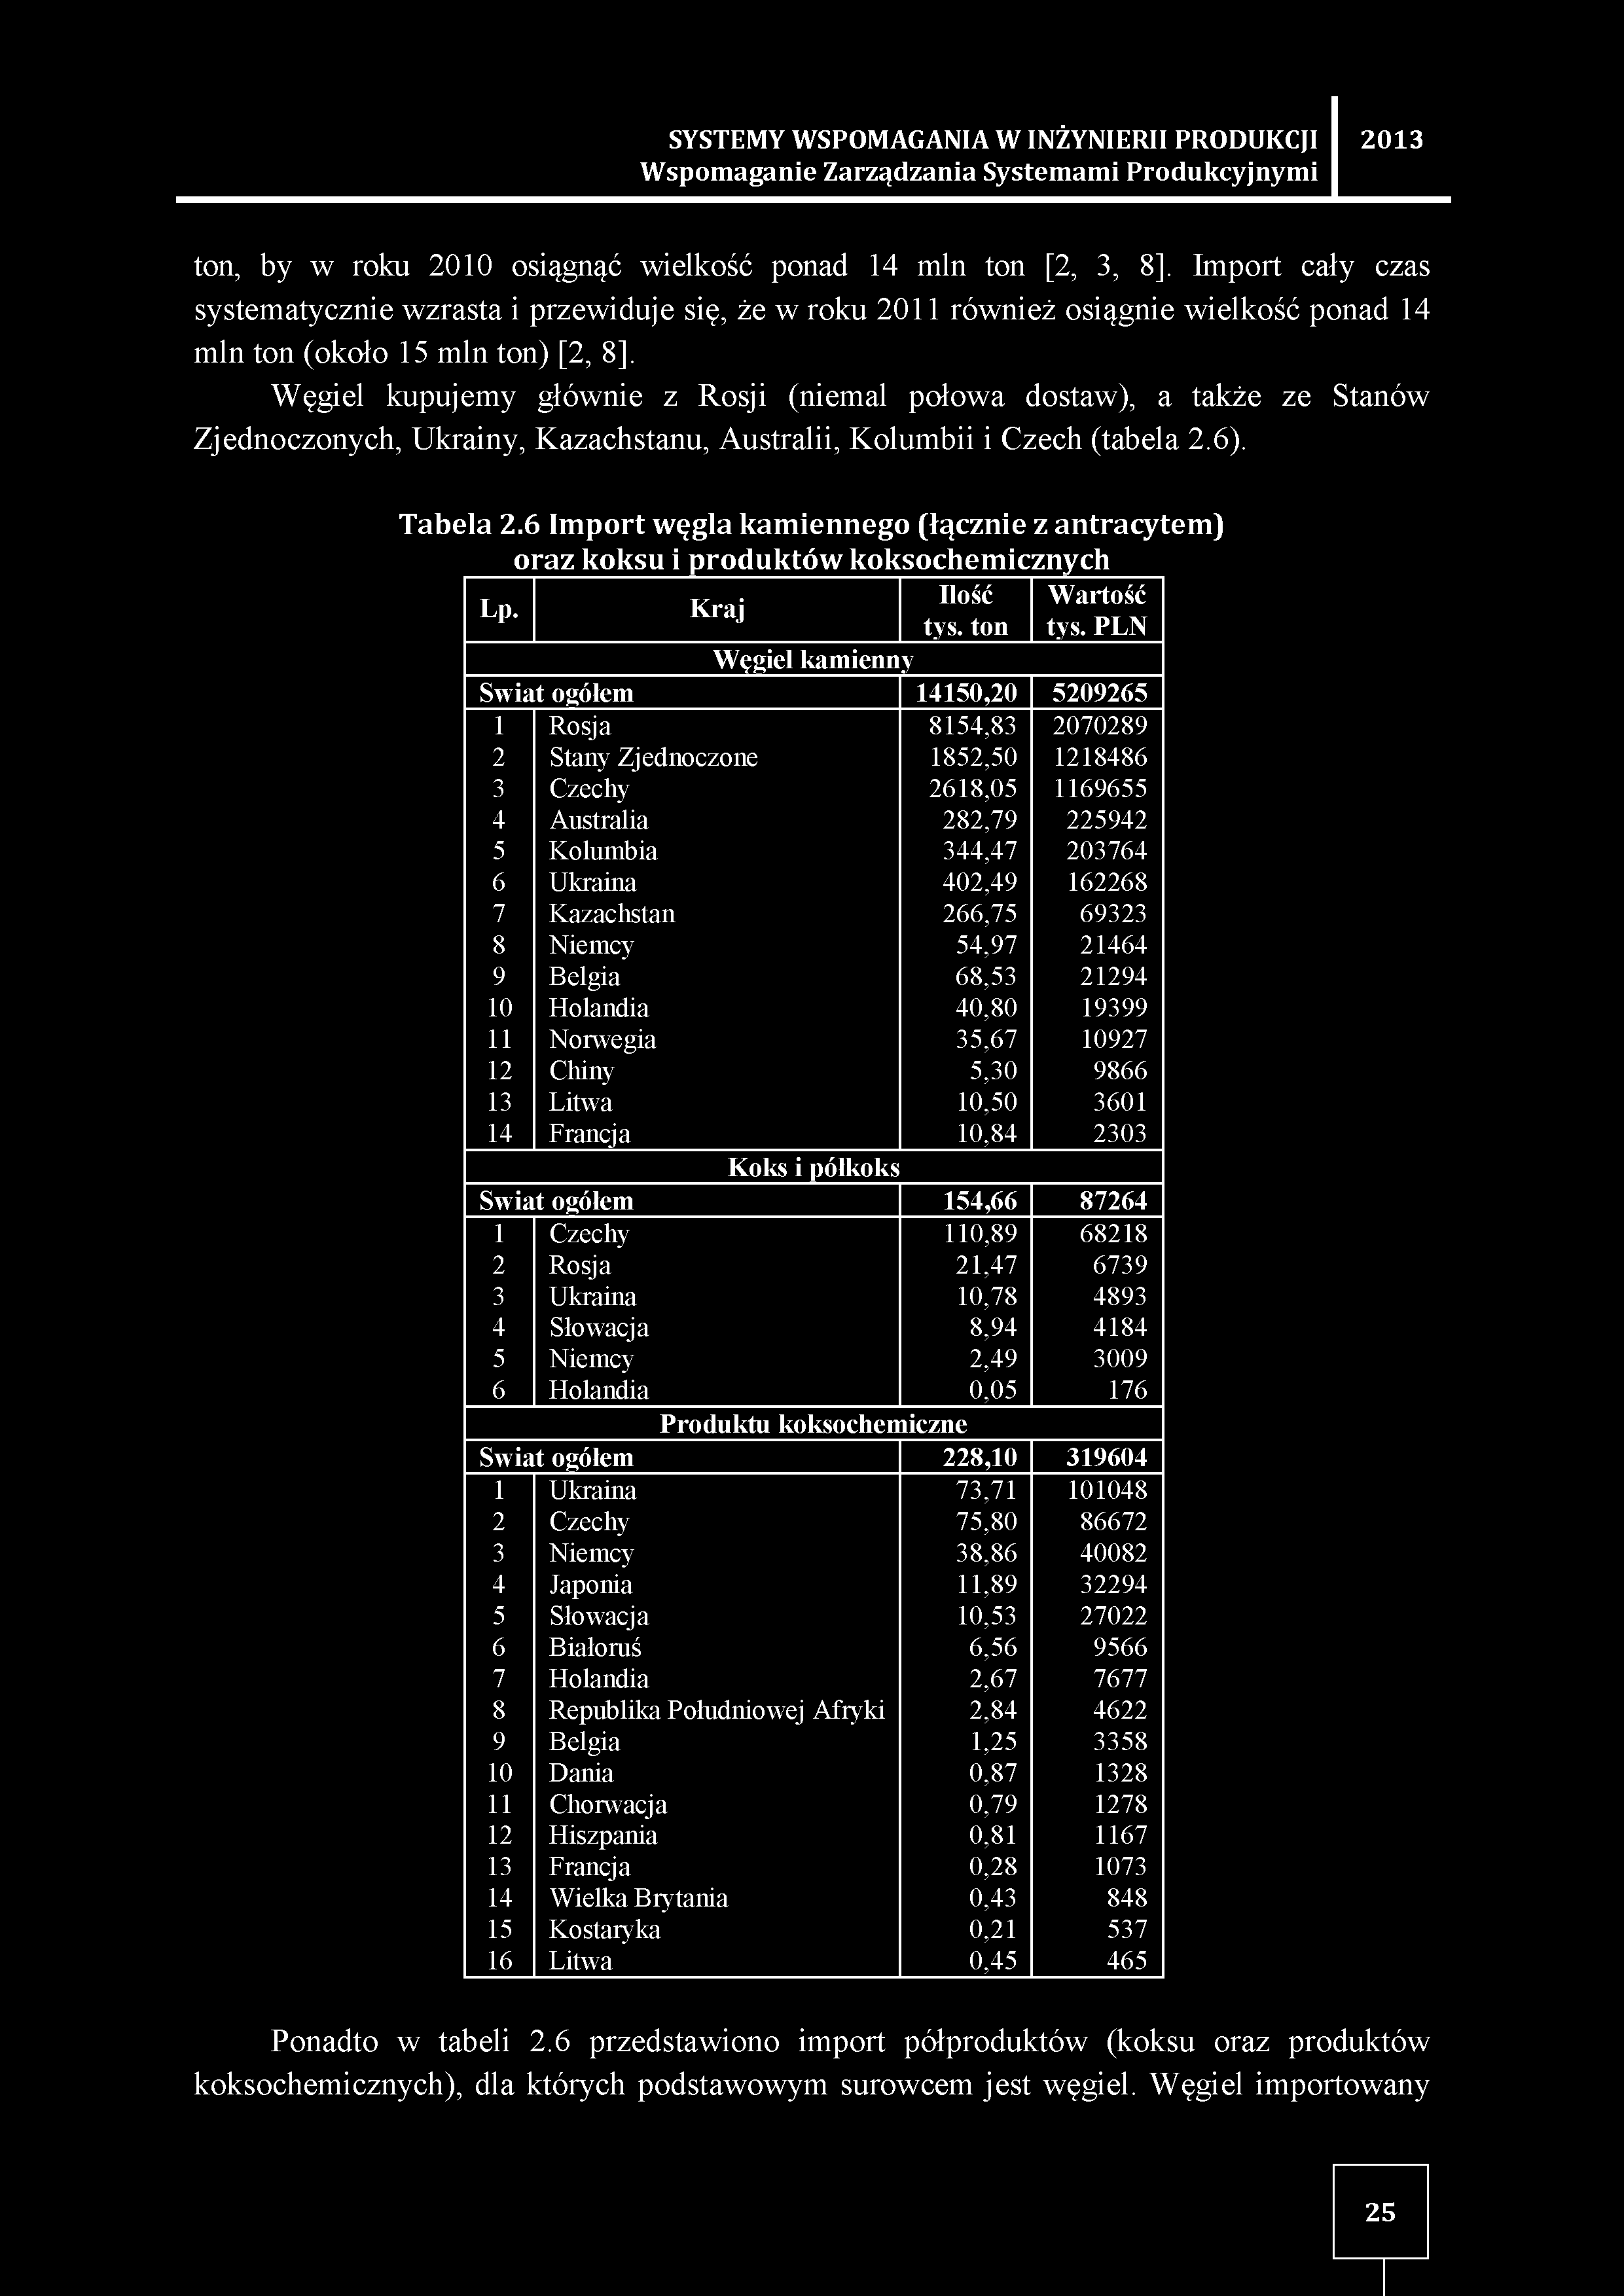 Węgiel kupujemy głównie z Rosji (niemal połowa dostaw), a także ze Stanów Zjednoczonych, Ukrainy, Kazachstanu, Australii, Kolumbii i Czech (tabela 2.6). Tabela 2.